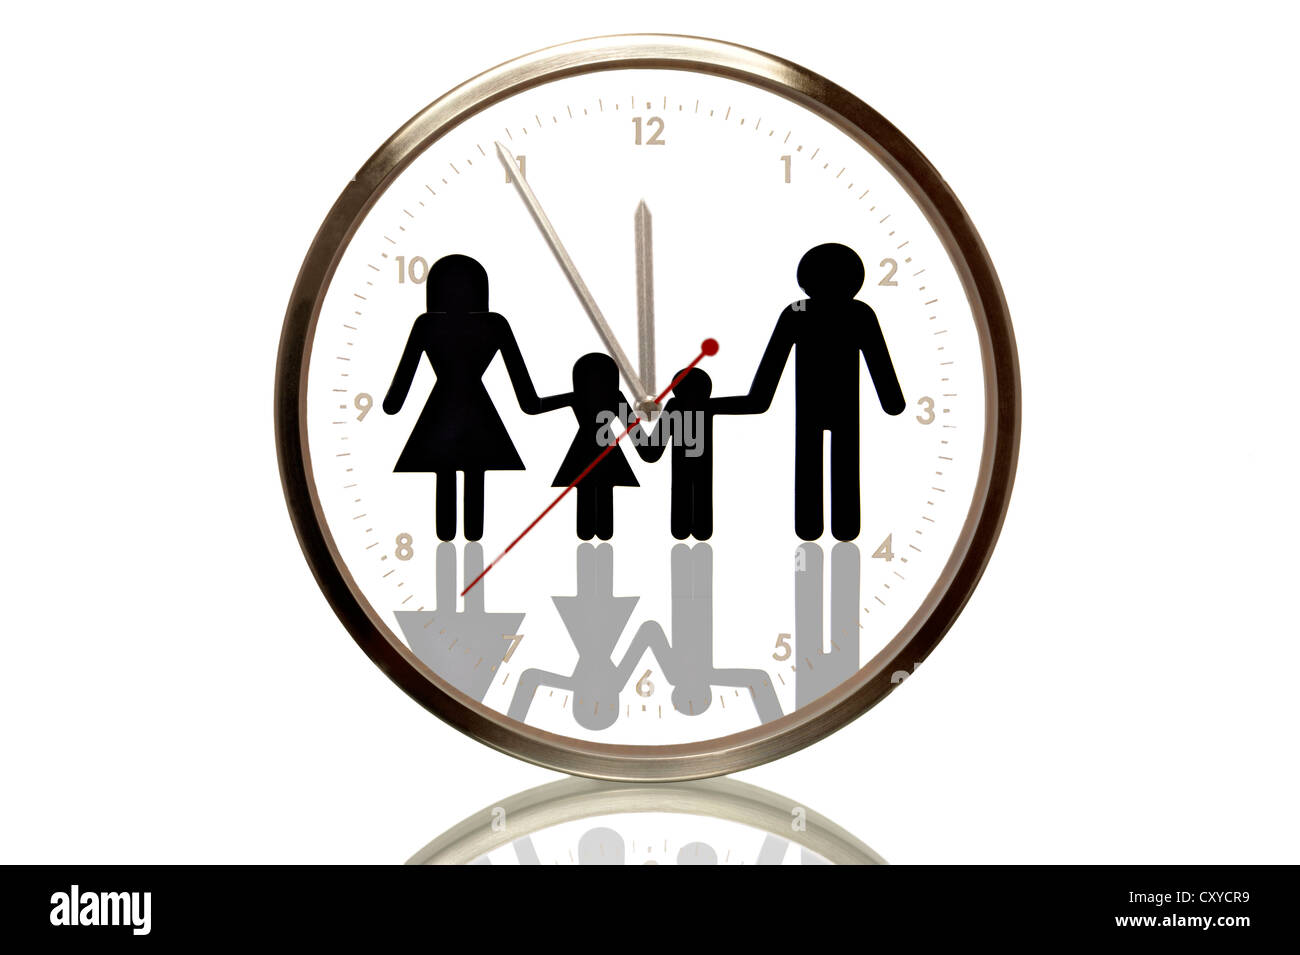 Reloj con una familia, a 5 minutos a 12, la undécima hora, imagen simbólica  para perspectivas demográficas Fotografía de stock - Alamy